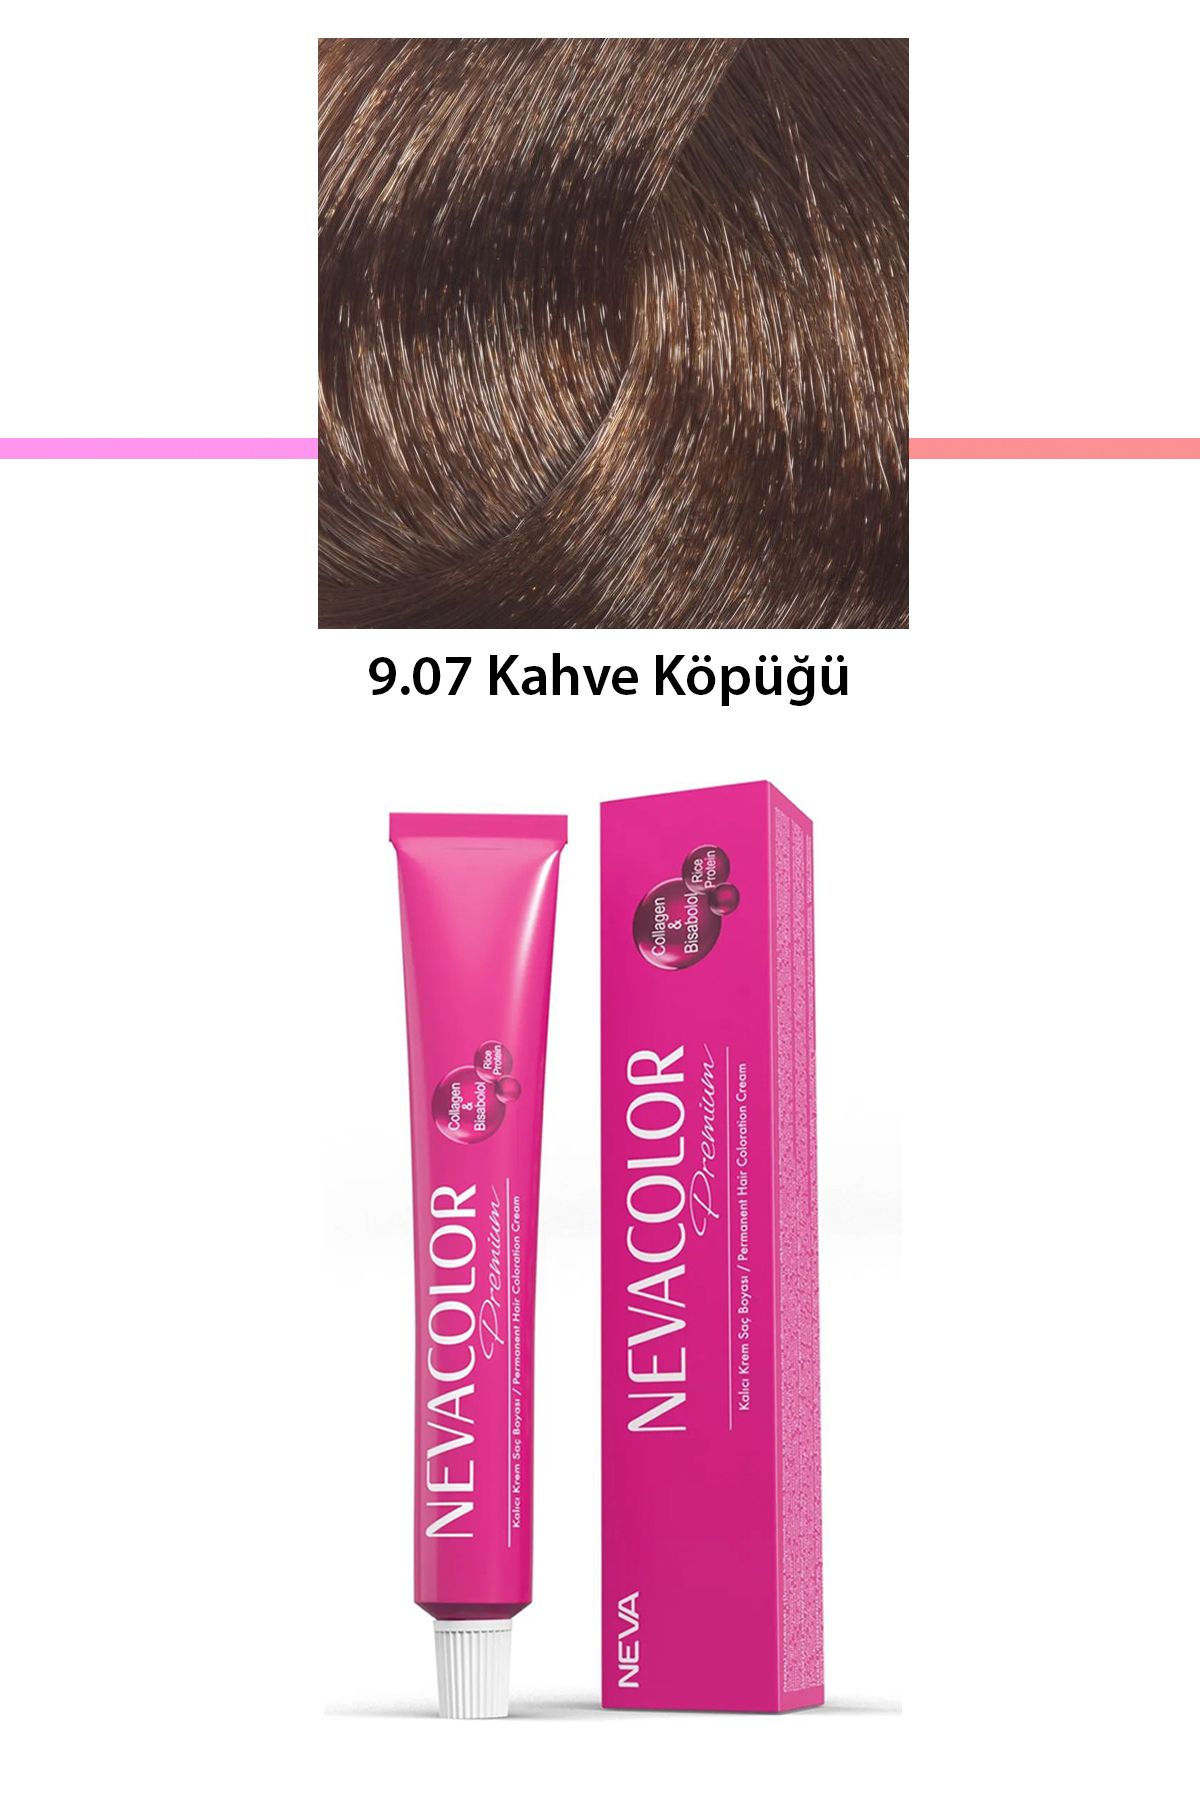 Neva Color Premium 9.07 Kahve Köpüğü - Kalıcı Krem Saç Boyası 50 g Tüp